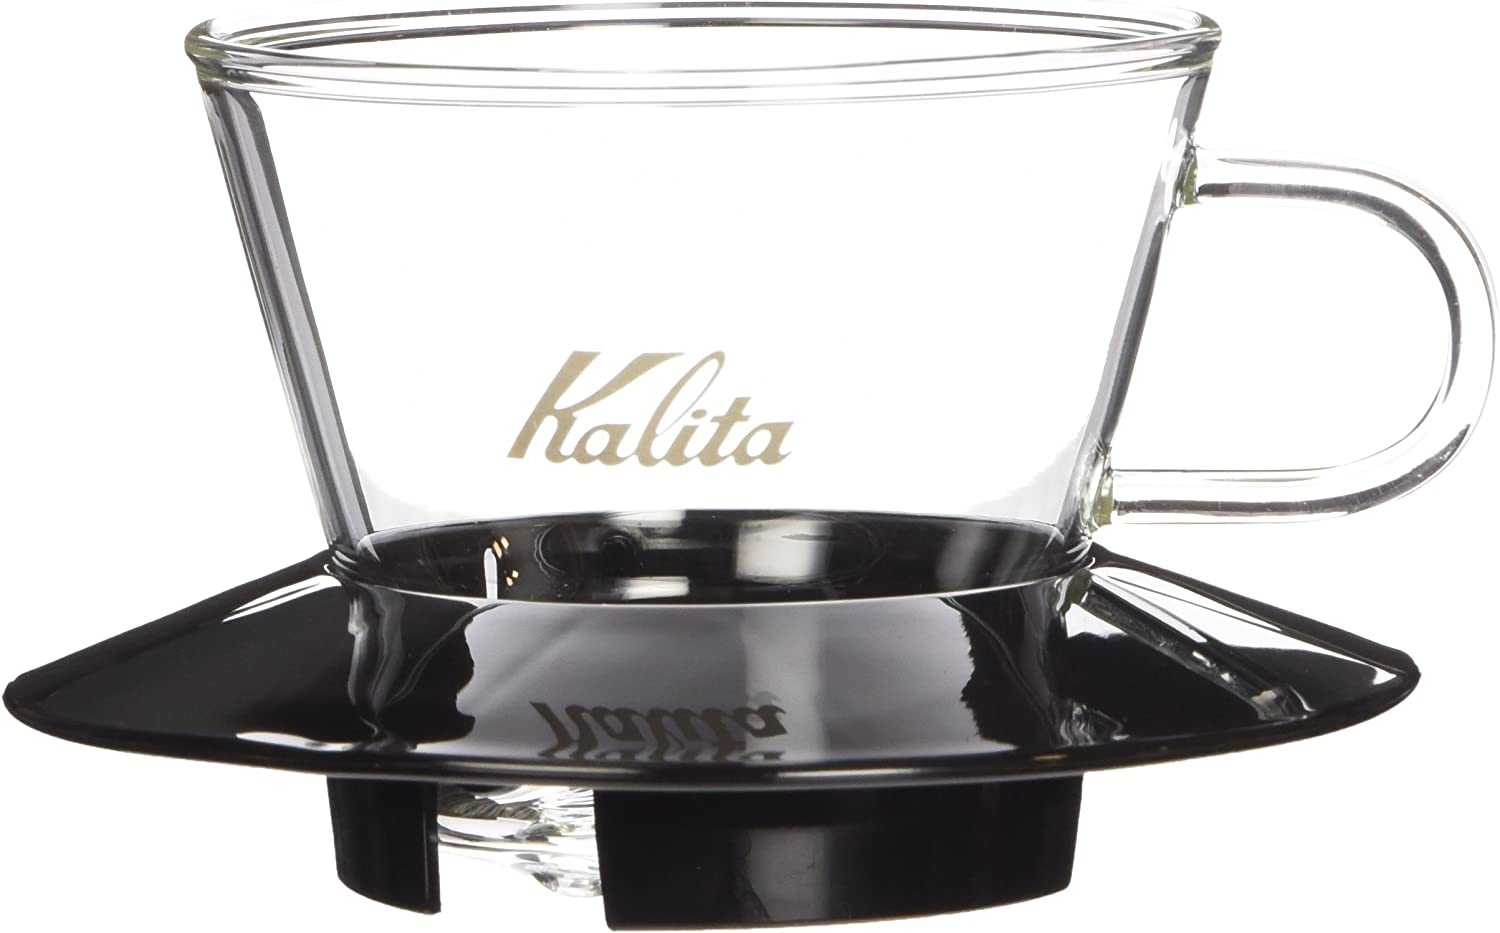 「自己有用才推薦」Kalita 155 蛋糕玻璃濾杯 185蛋糕玻璃濾杯 蛋糕濾紙 碗型濾紙